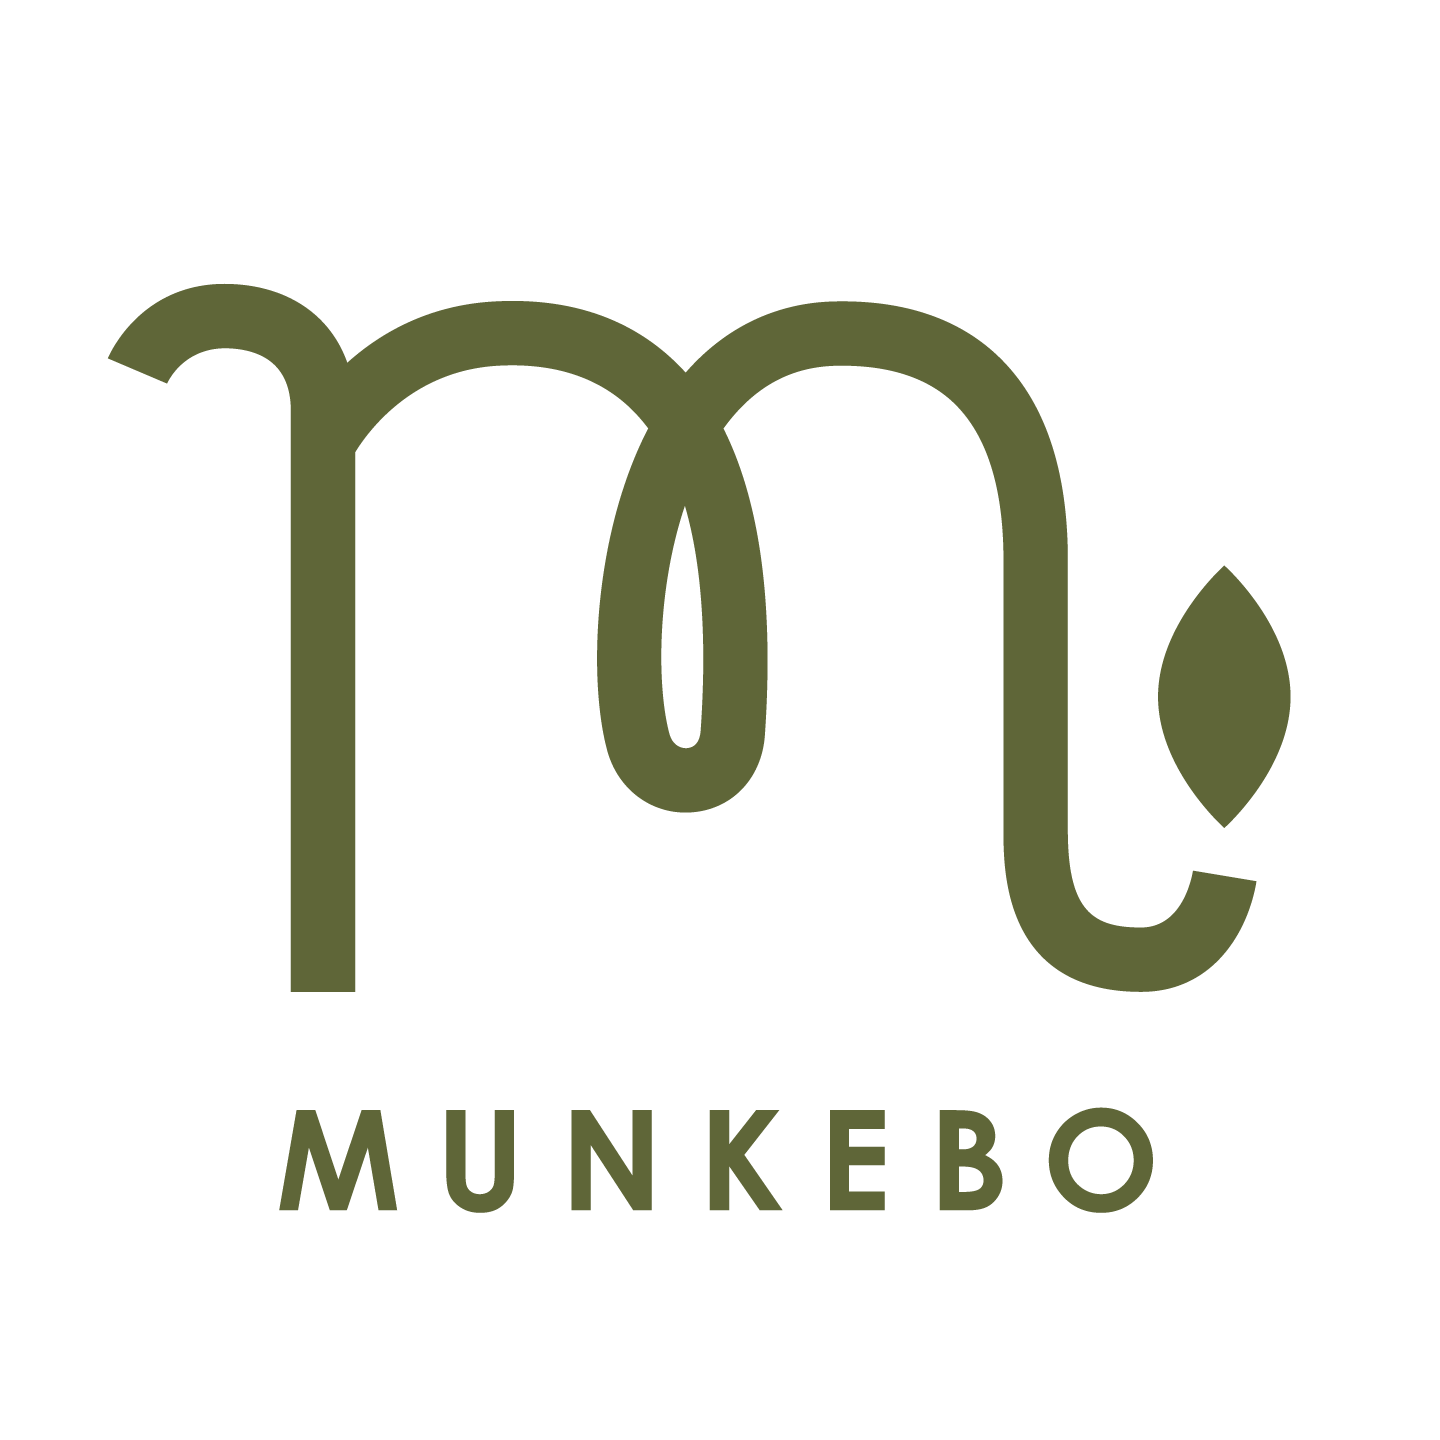 Munkebogård Logo